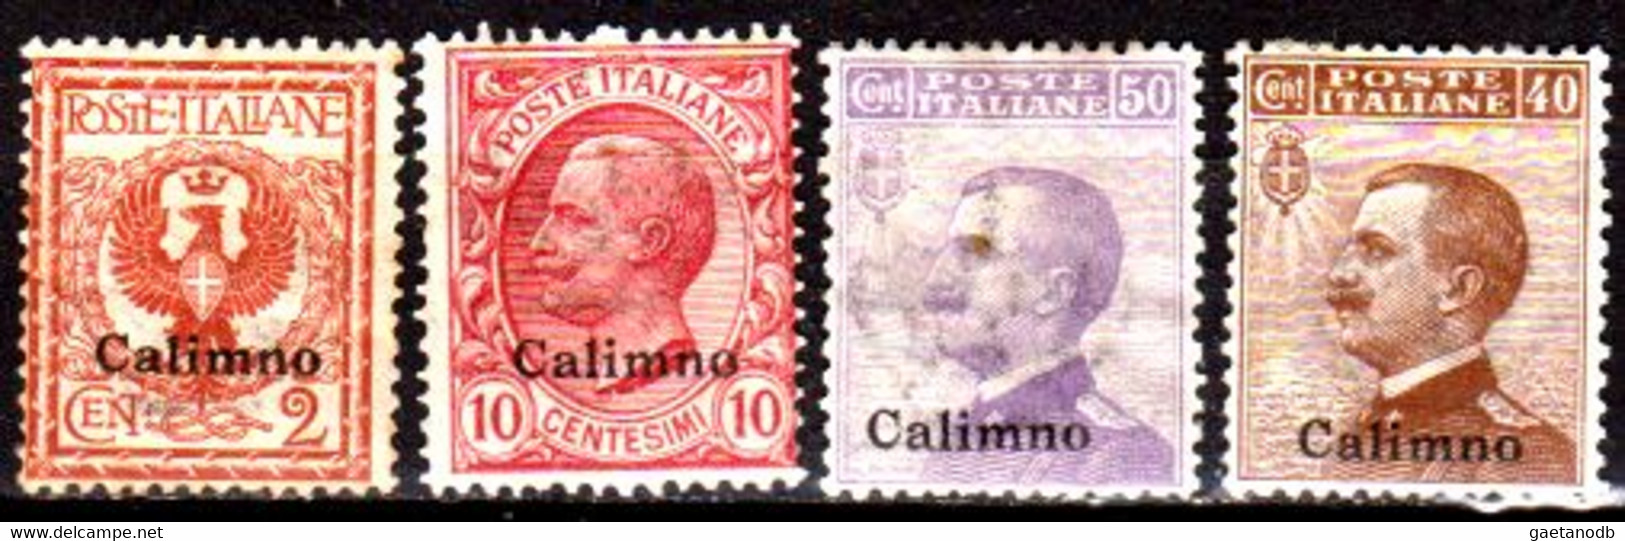 Italia-G 1101 - Colonie Italiane - Egeo: Calino 1912 (++/+) MNH/Hinged - Qualità A Vostro Giudizio. - Egée (Calino)